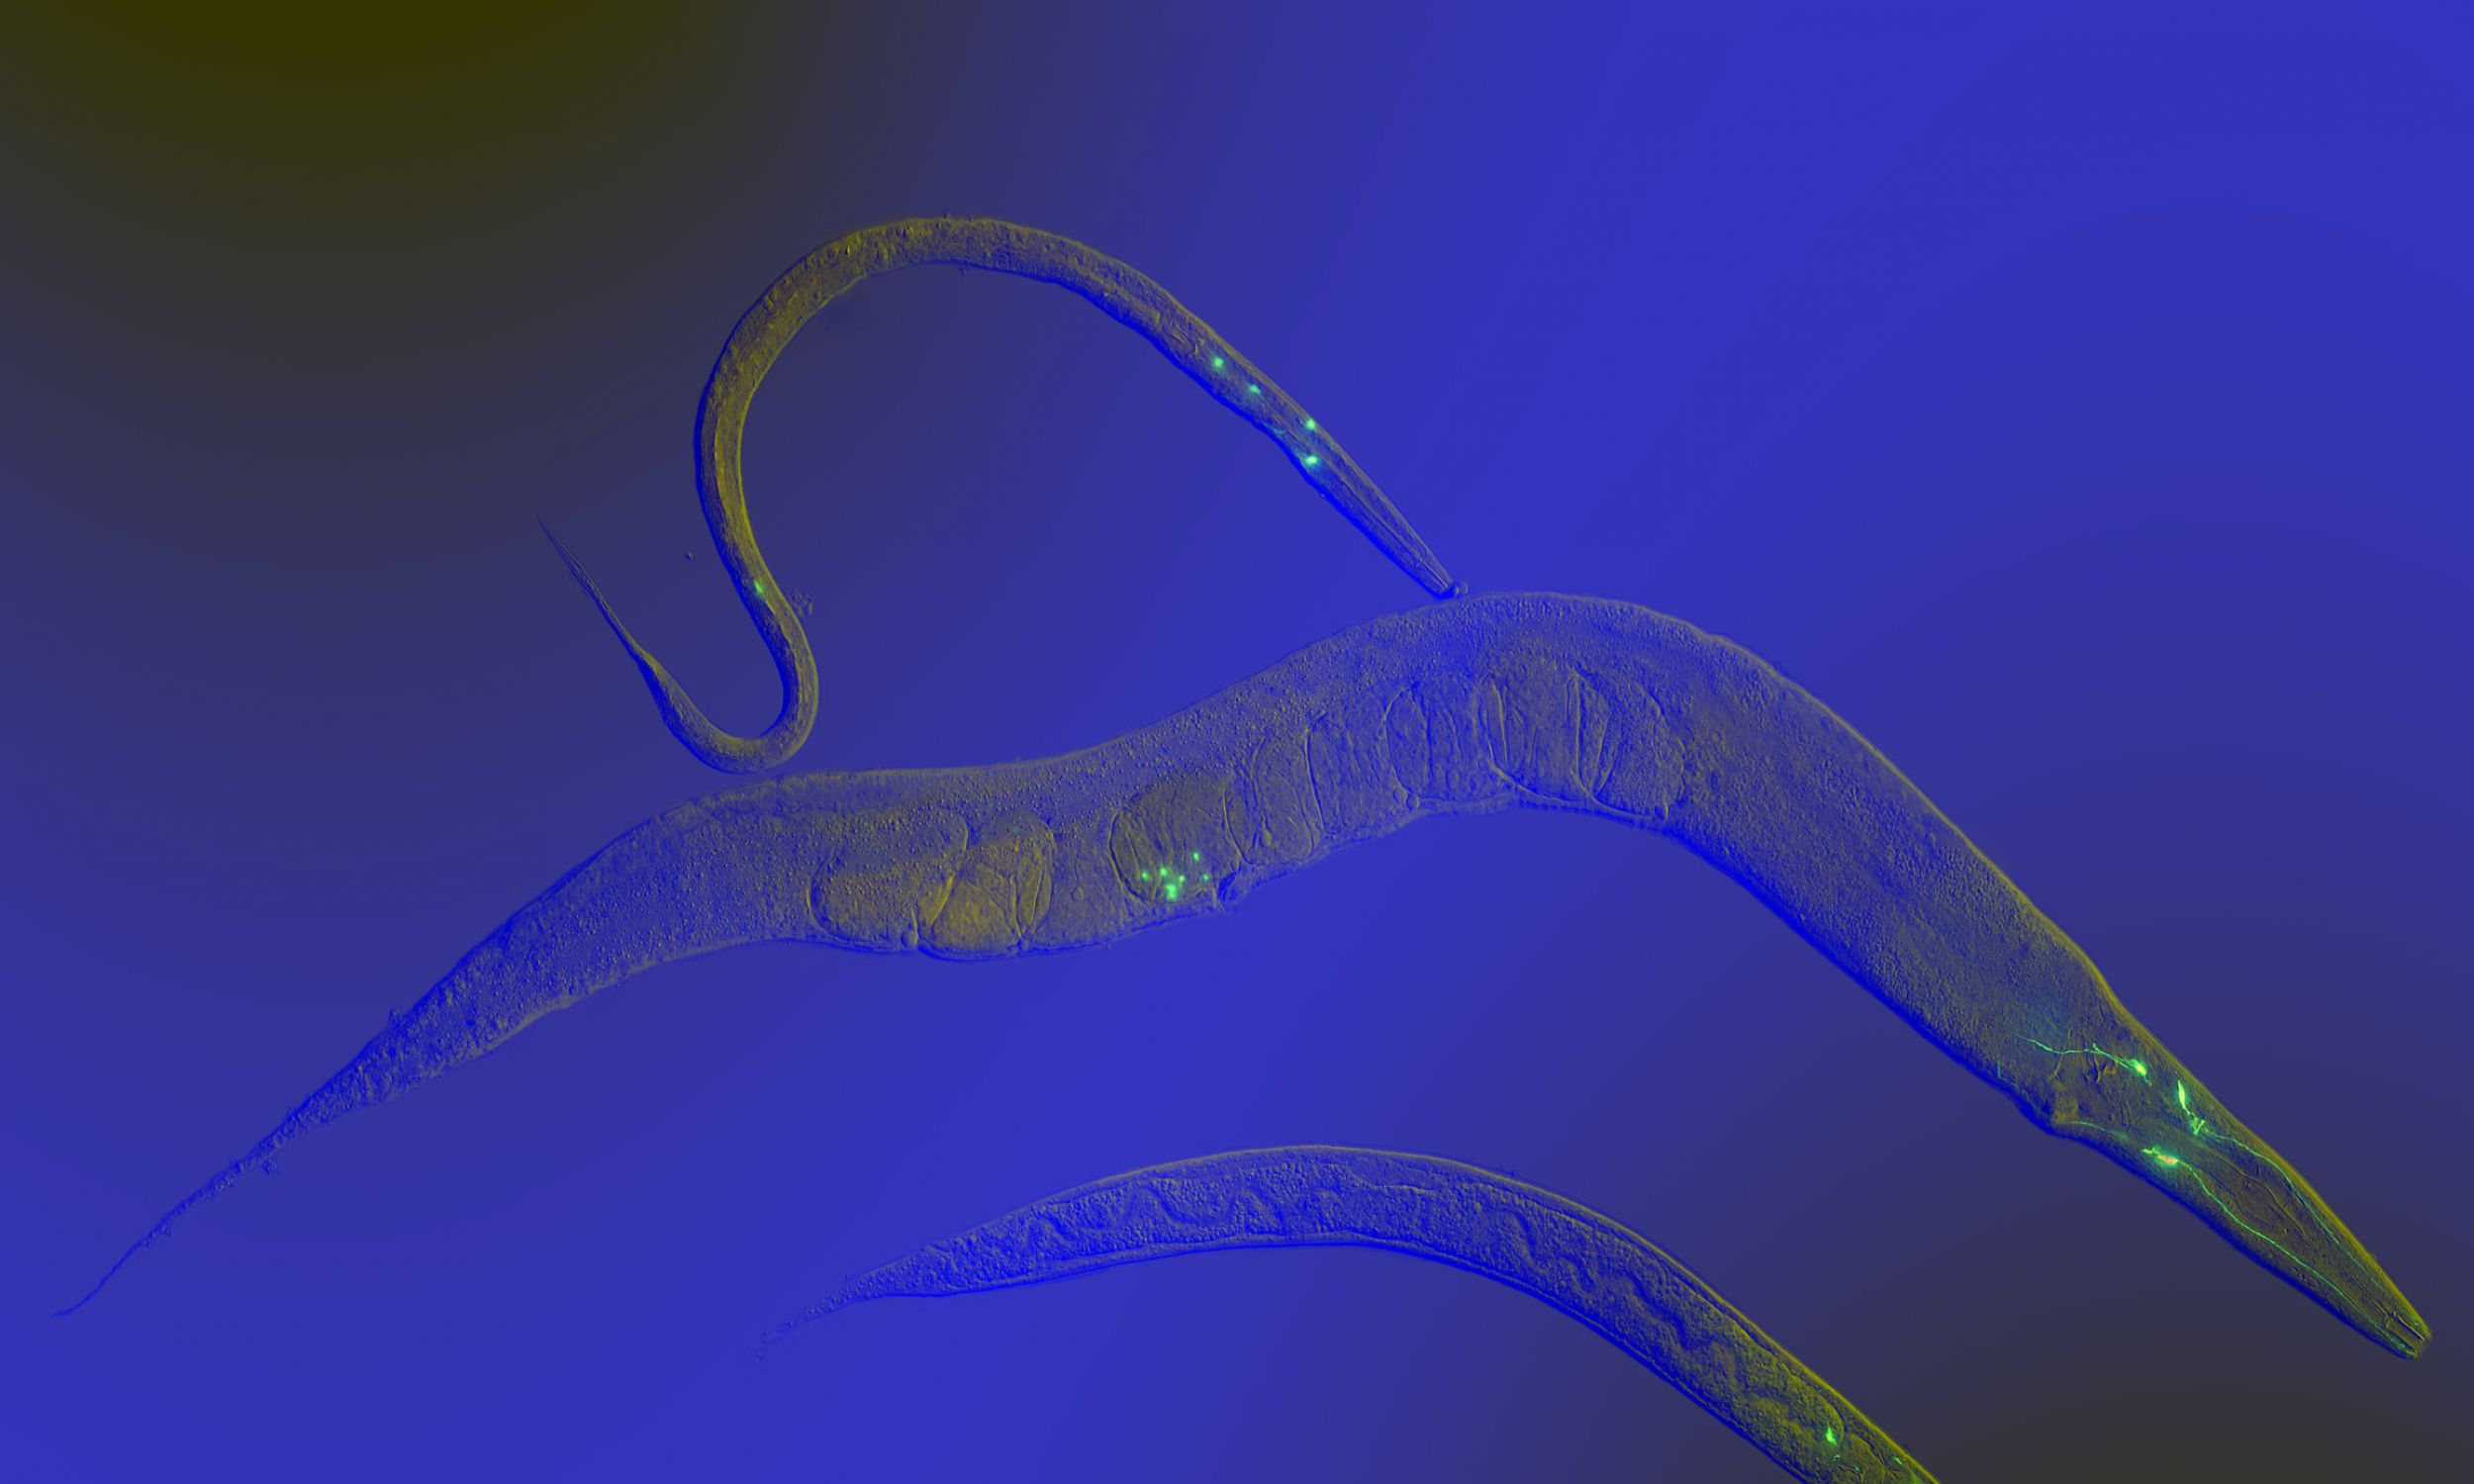 To zdjęcie jest zwycięzcą konkursu fotograficznego Science Photo 2007. Przedstawia C. elegans na różnych etapach rozwoju. Do trzech neuronów wprowadzono GFP (zielone białko fluorescencyjne) w celu wizualizacji rozwoju tych neuronów w robaku. Fotomikrografia, fluorescencja + kontrast interferencyjny różnicowy. Fot. Heiti Paves - Heiti Paves, CC BY-SA 4.0, https://commons.wikimedia.org/w/index.php?curid=82581247